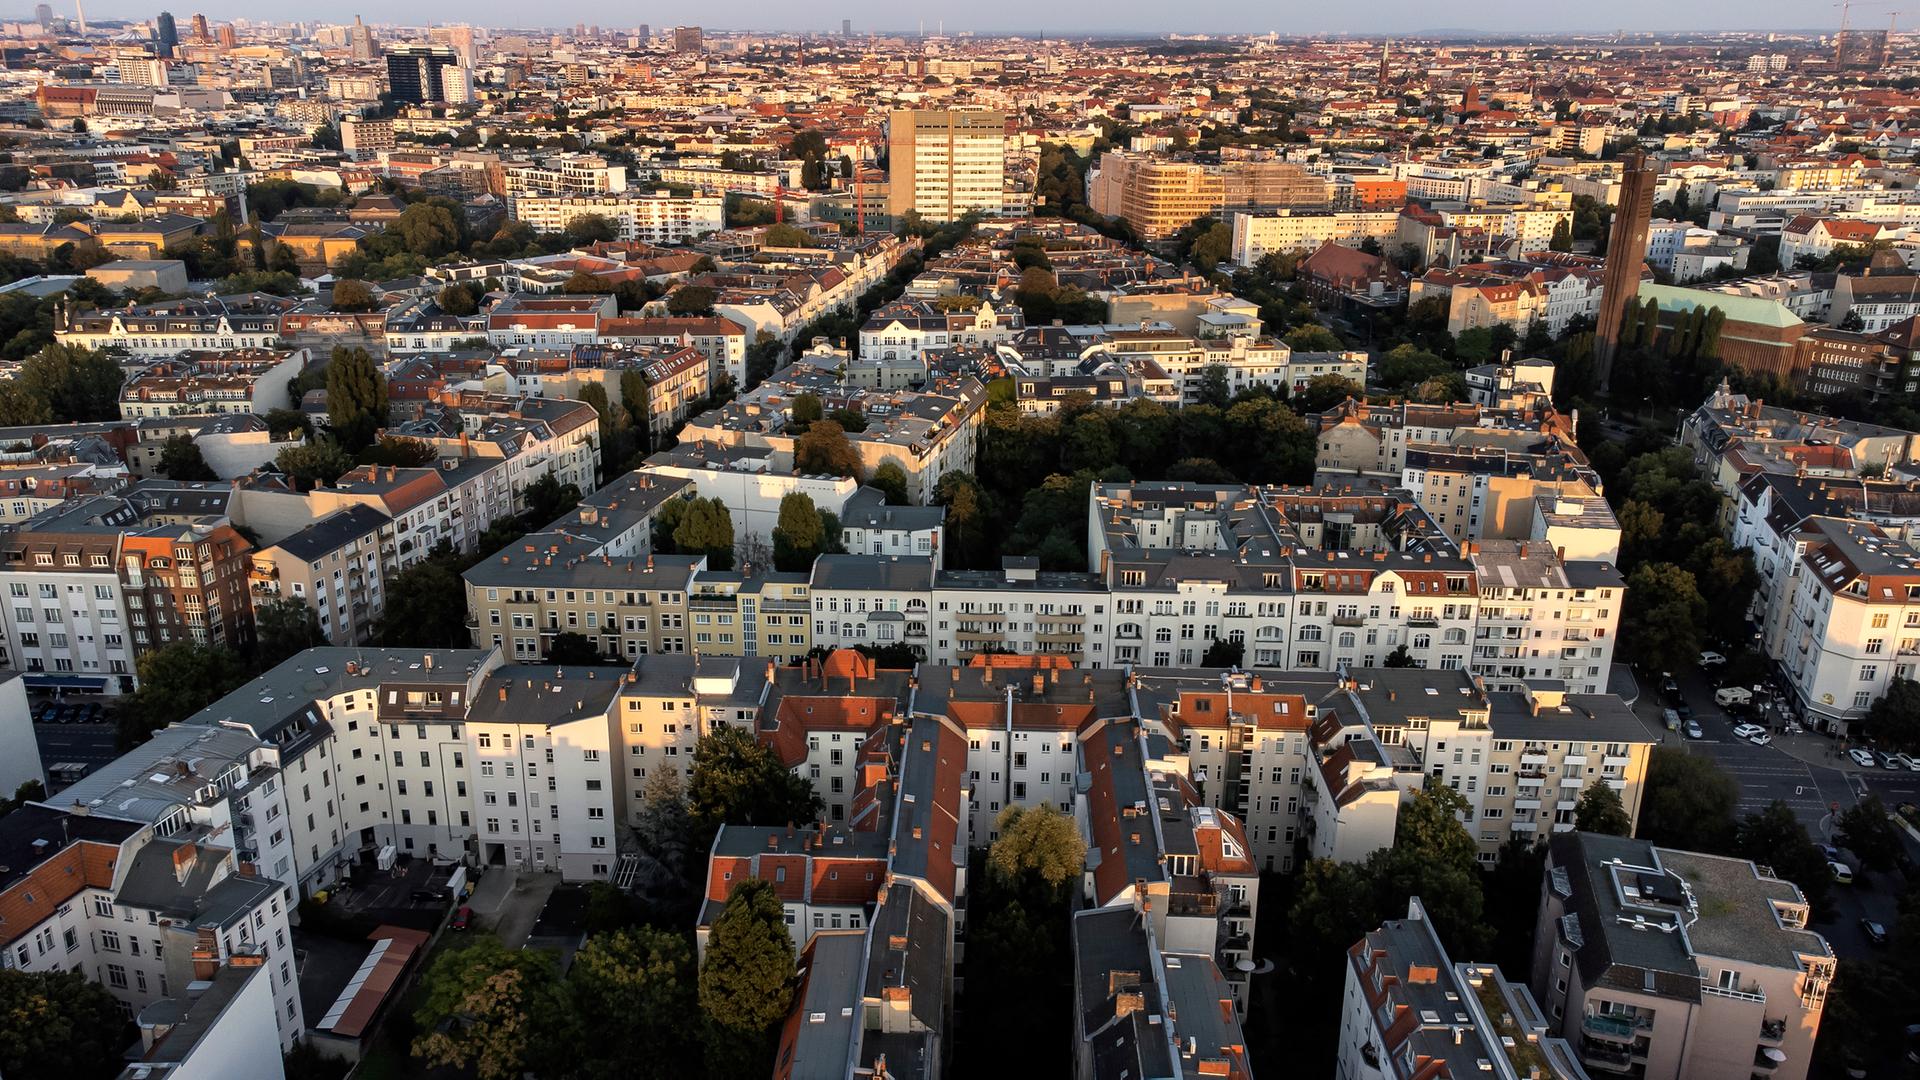 Häusermeer: Blick aus der Luft auf den Stadtteil Wilmersdorf in Berlin.